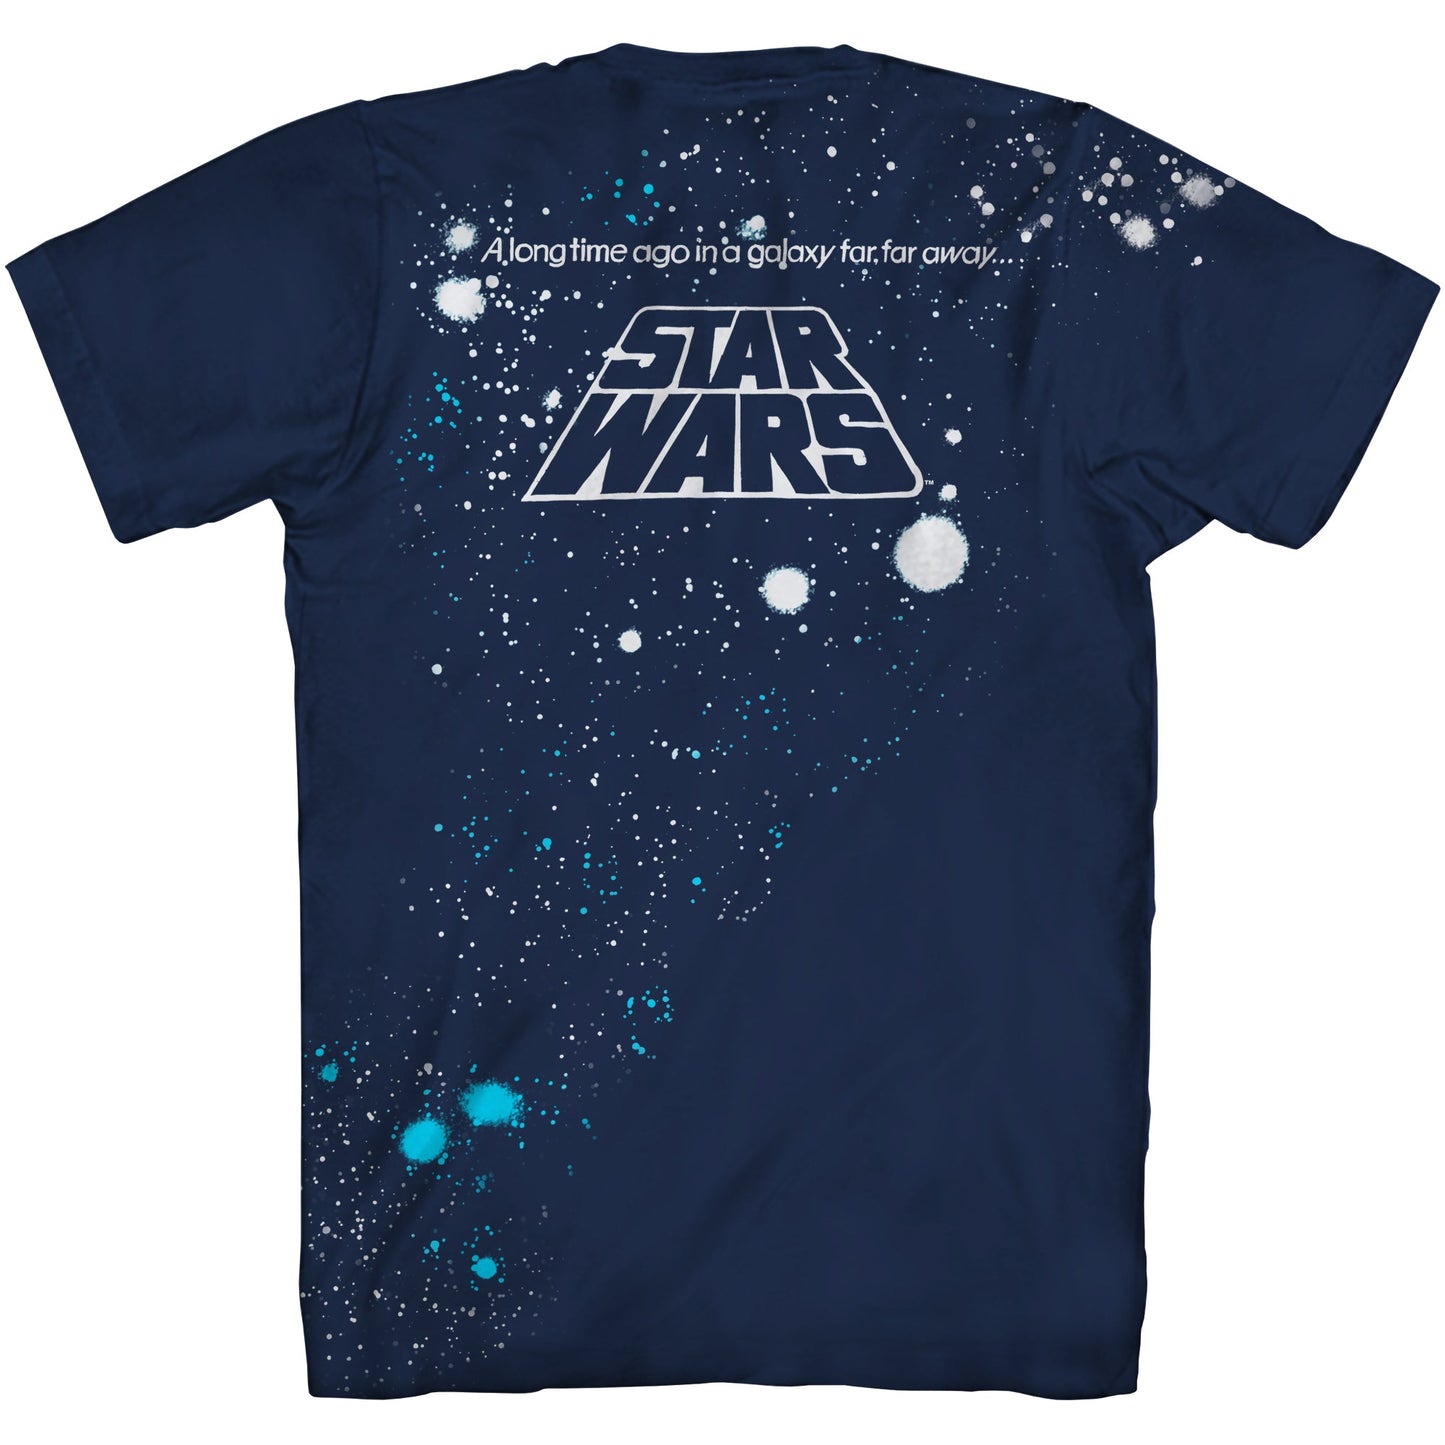 Star Wars War Of Wars Vintage Poster Allover Print Adult T-Shirt